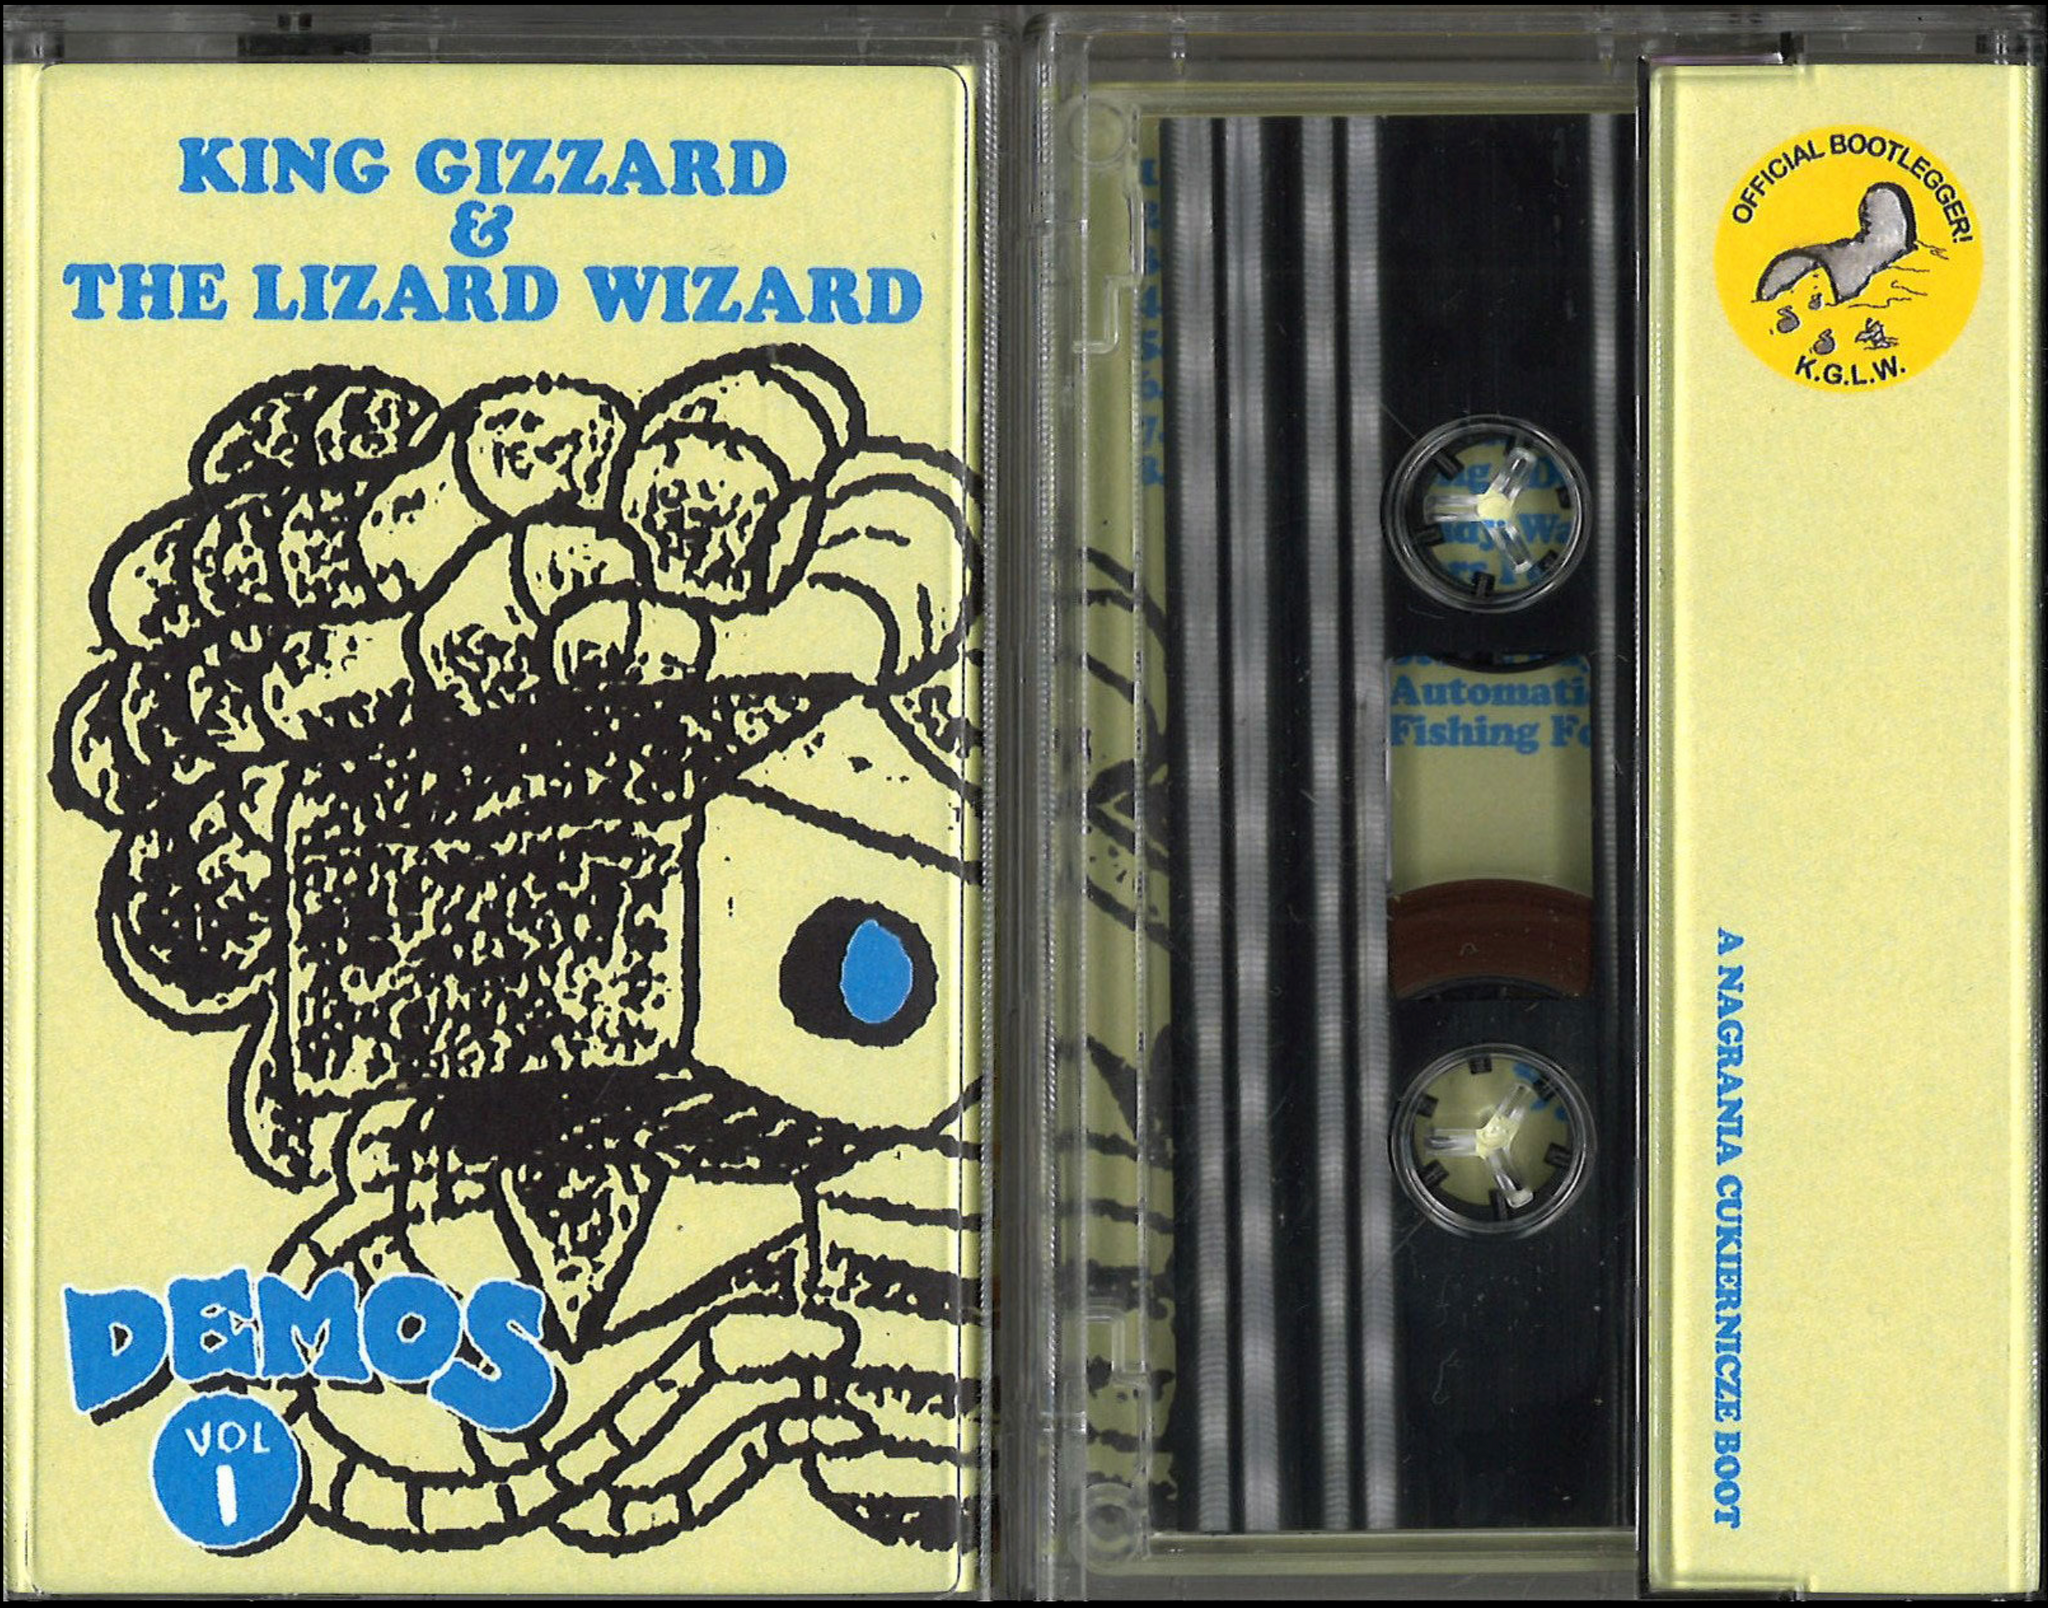 KING GIZZARD & THE LIZARD WIZARD - DEMOS VOL. 1 Cassette Tape